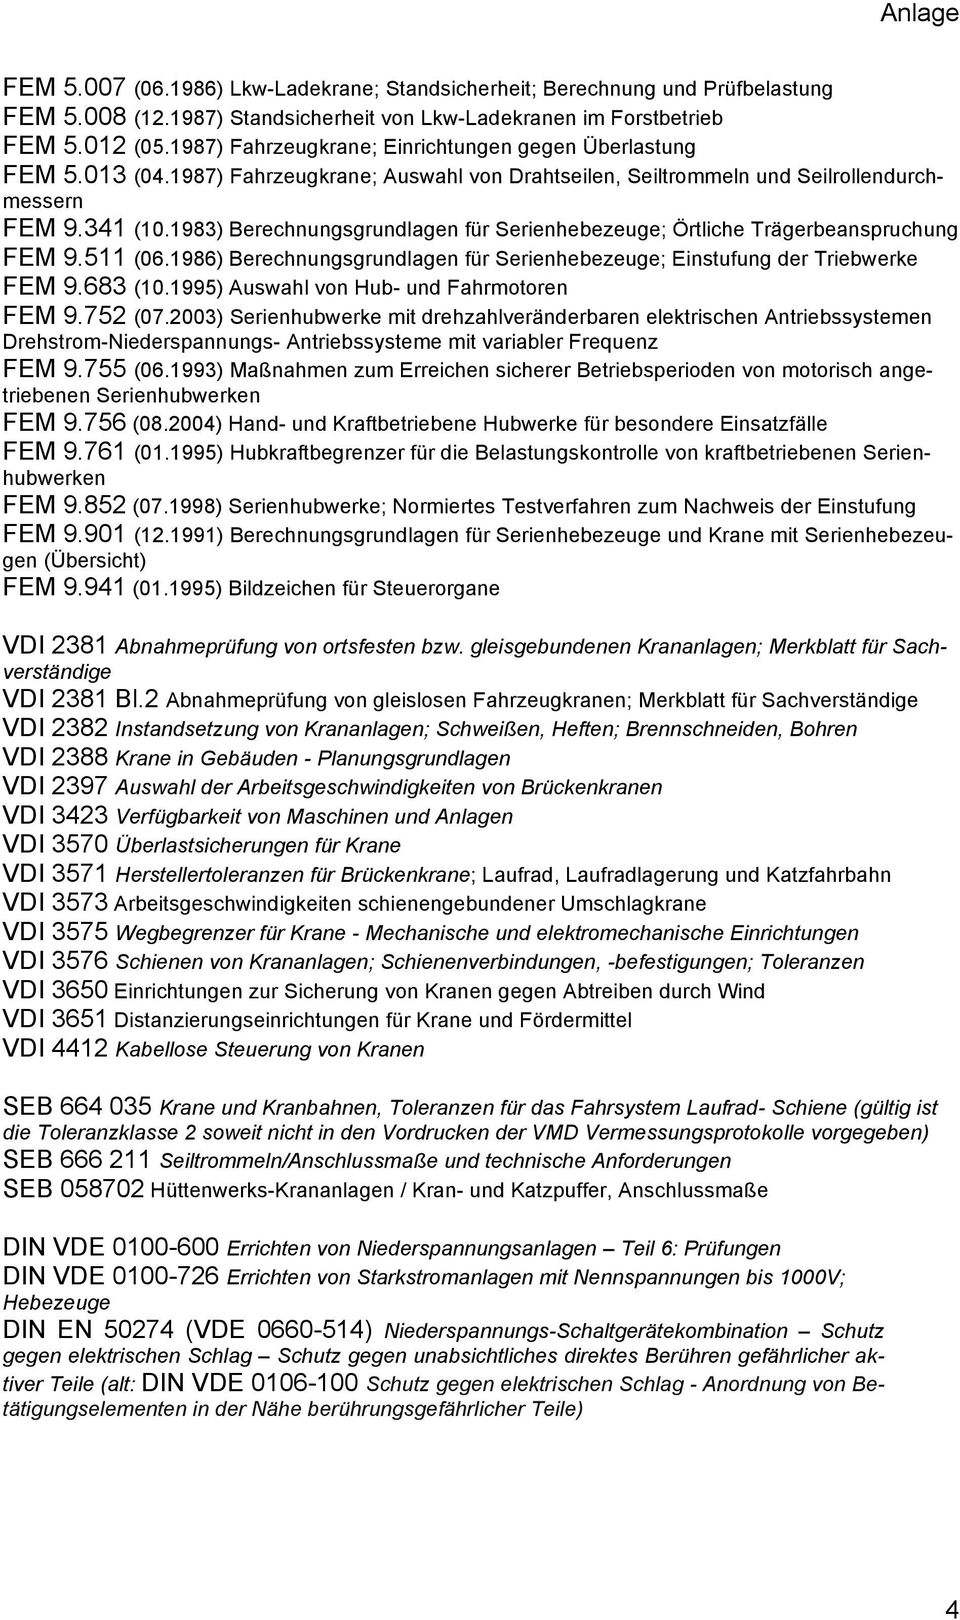 1983) Berechnungsgrundlagen für Serienhebezeuge; Örtliche Trägerbeanspruchung FEM 9.511 (06.1986) Berechnungsgrundlagen für Serienhebezeuge; Einstufung der Triebwerke FEM 9.683 (10.